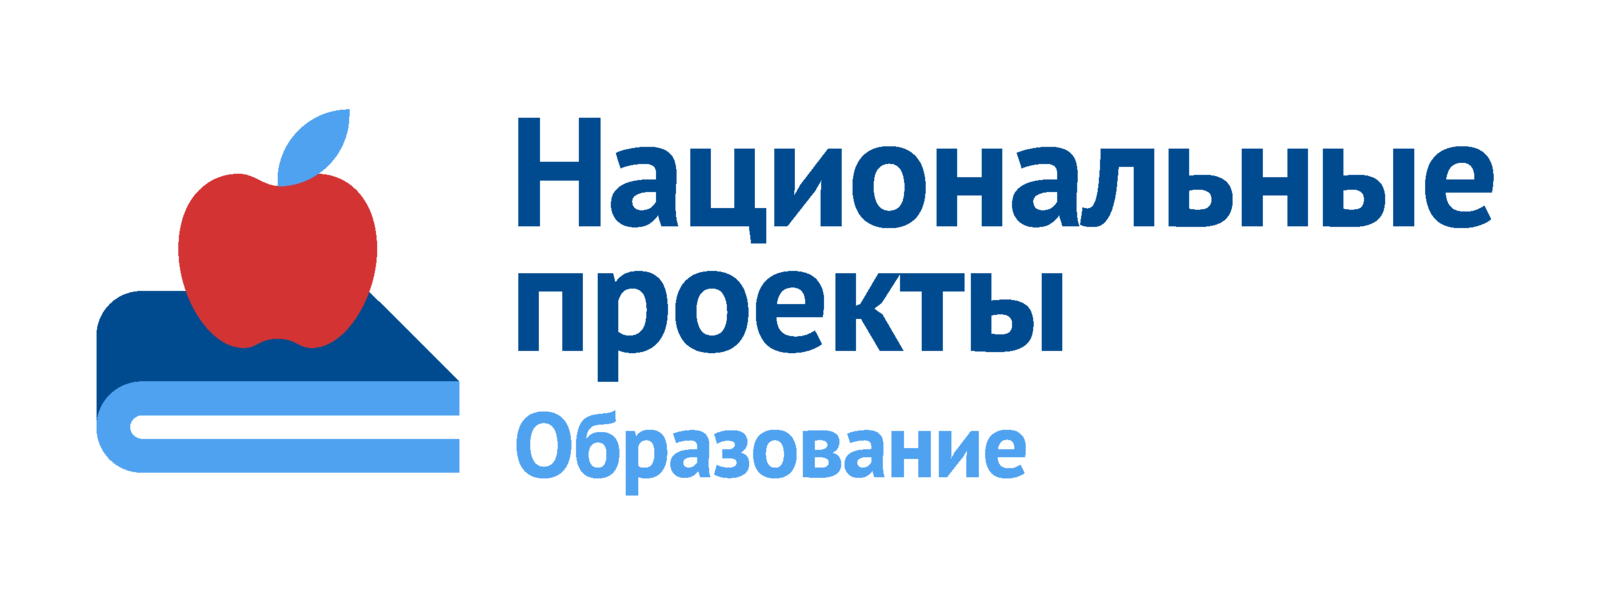 В Республике Башкортостан демонстрационный экзамен сдали более 11 тысяч студентов